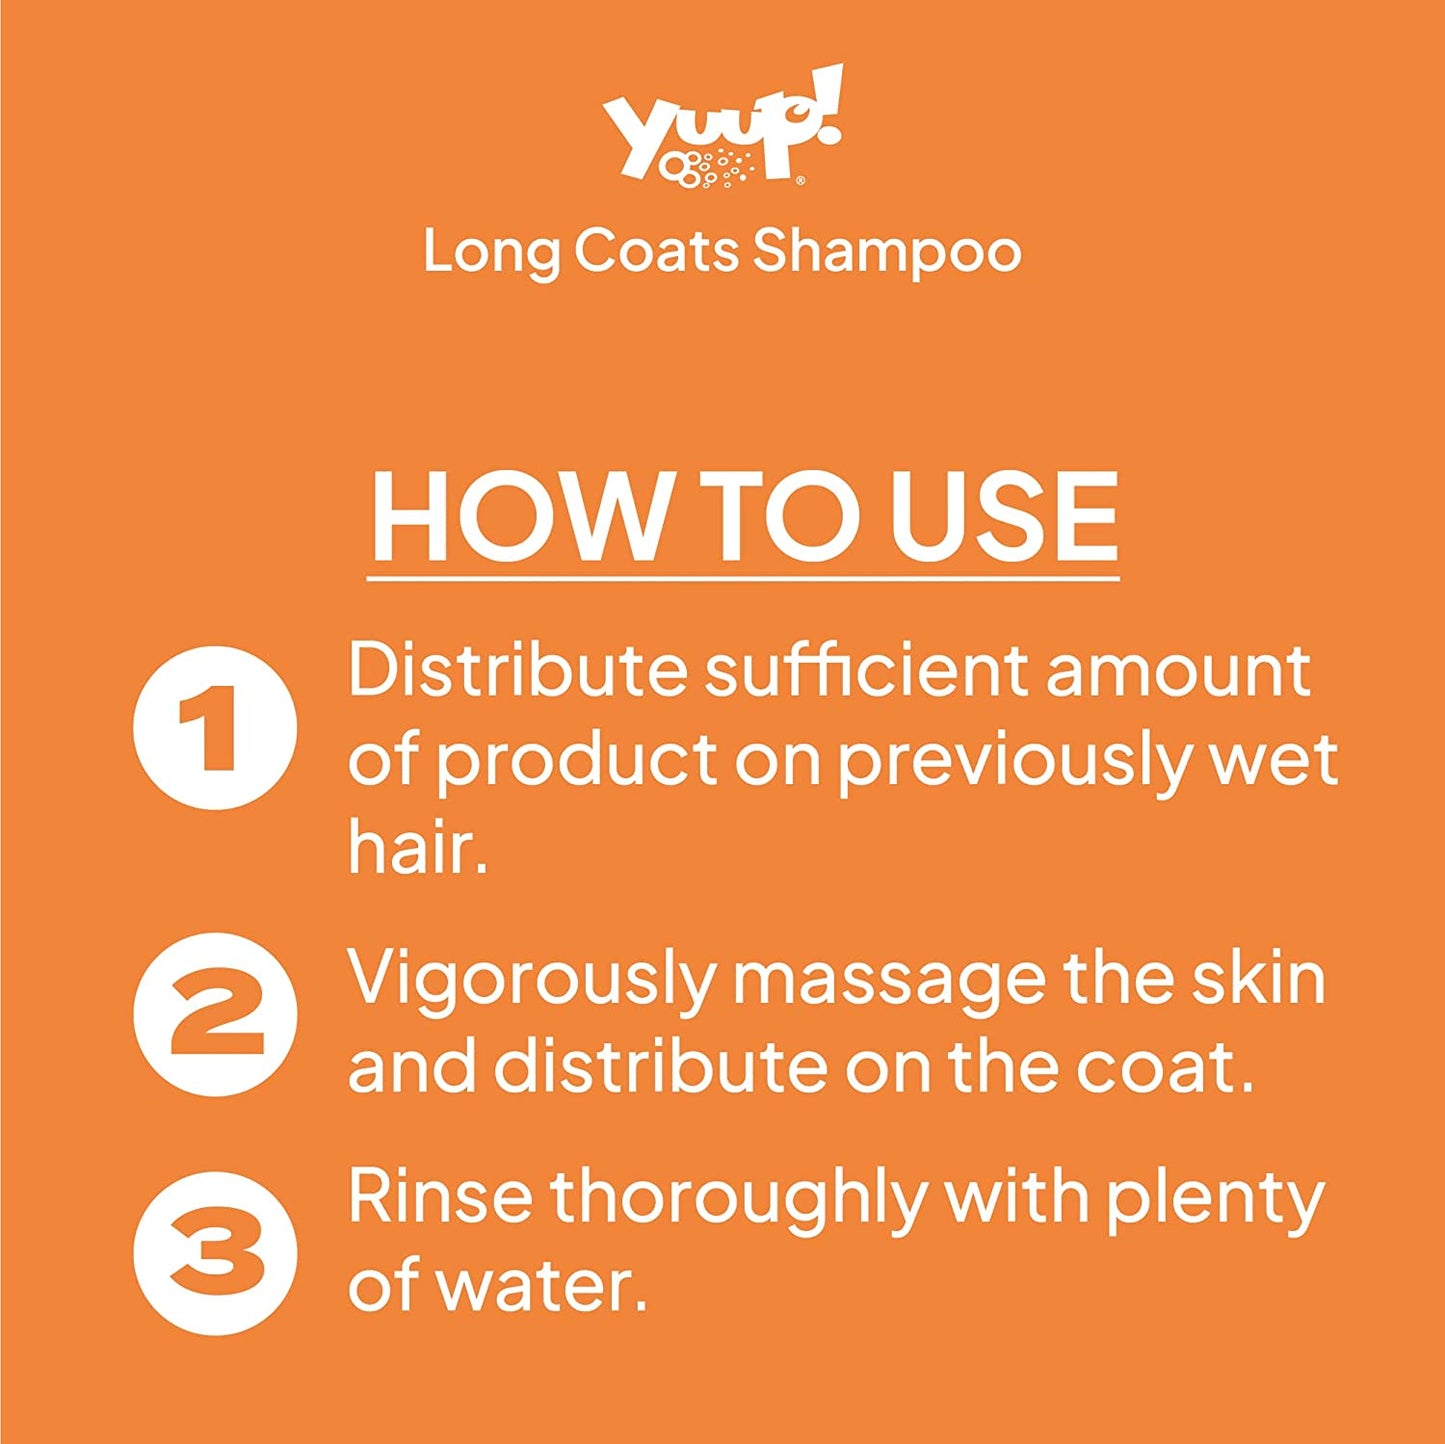 Long coats shampoo